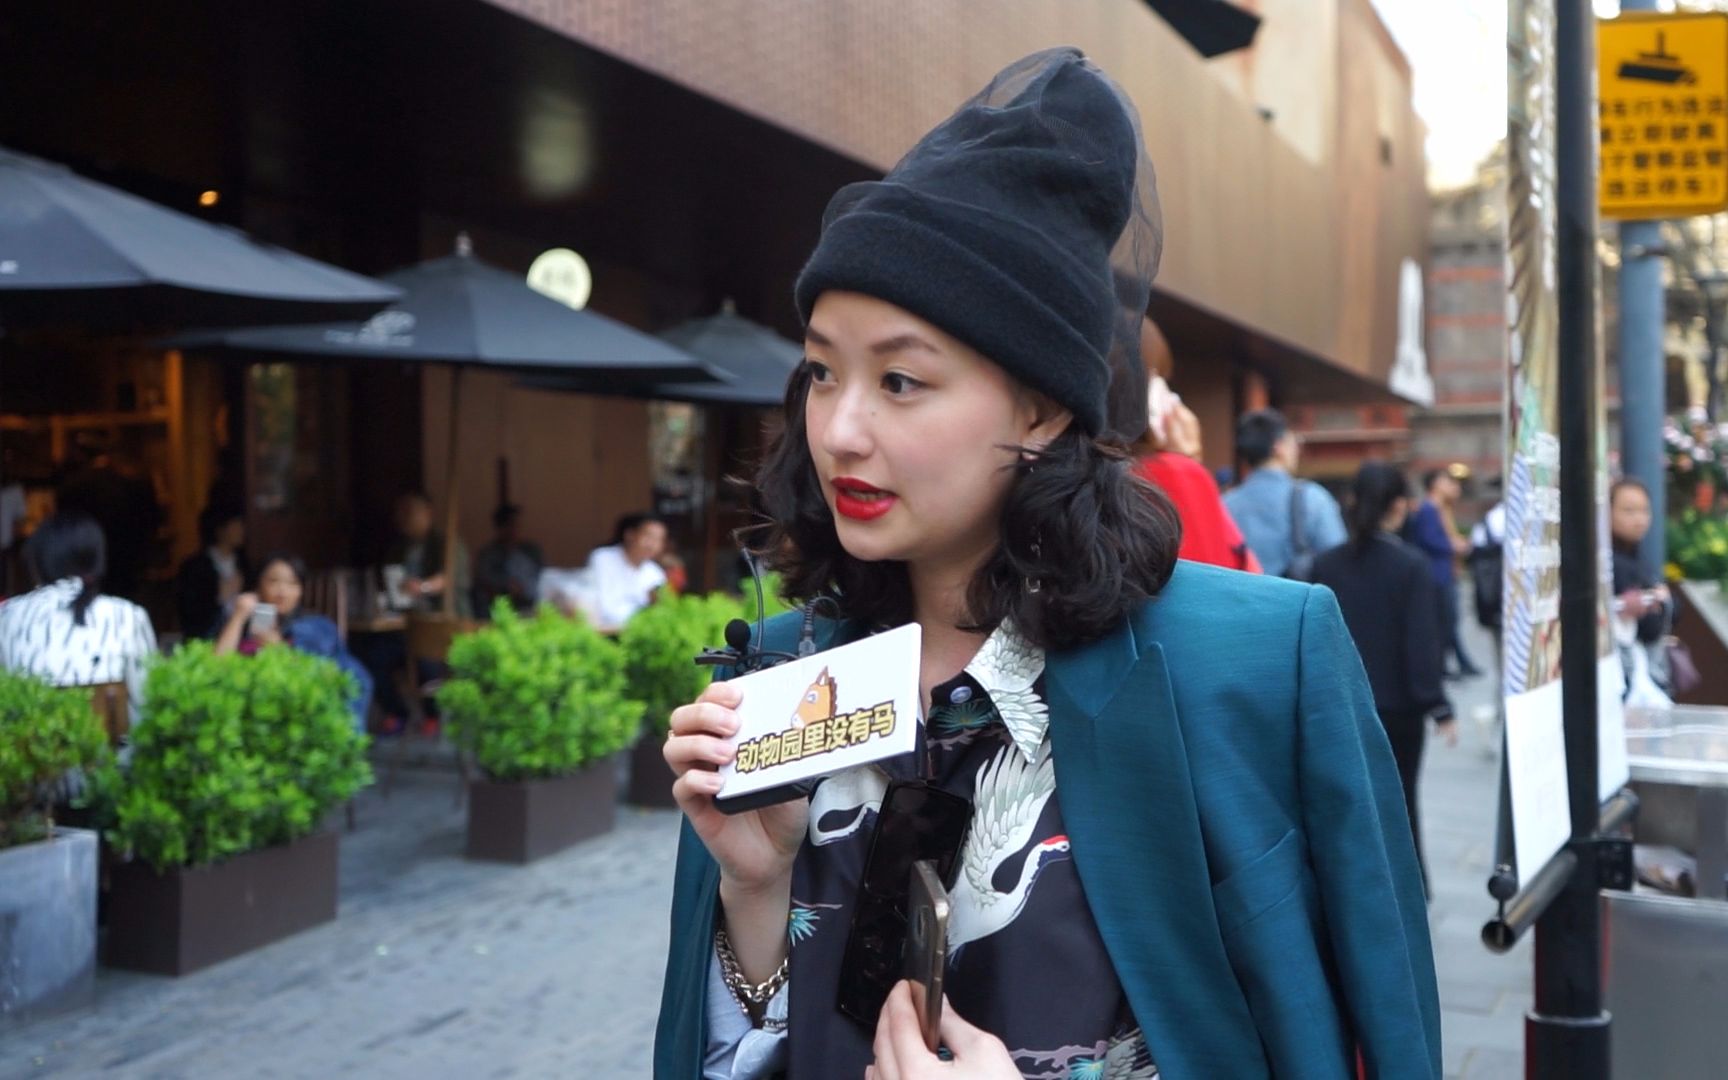 上海时装周进行中网红鸡毛姐犀利点评人丑能不能追求时尚